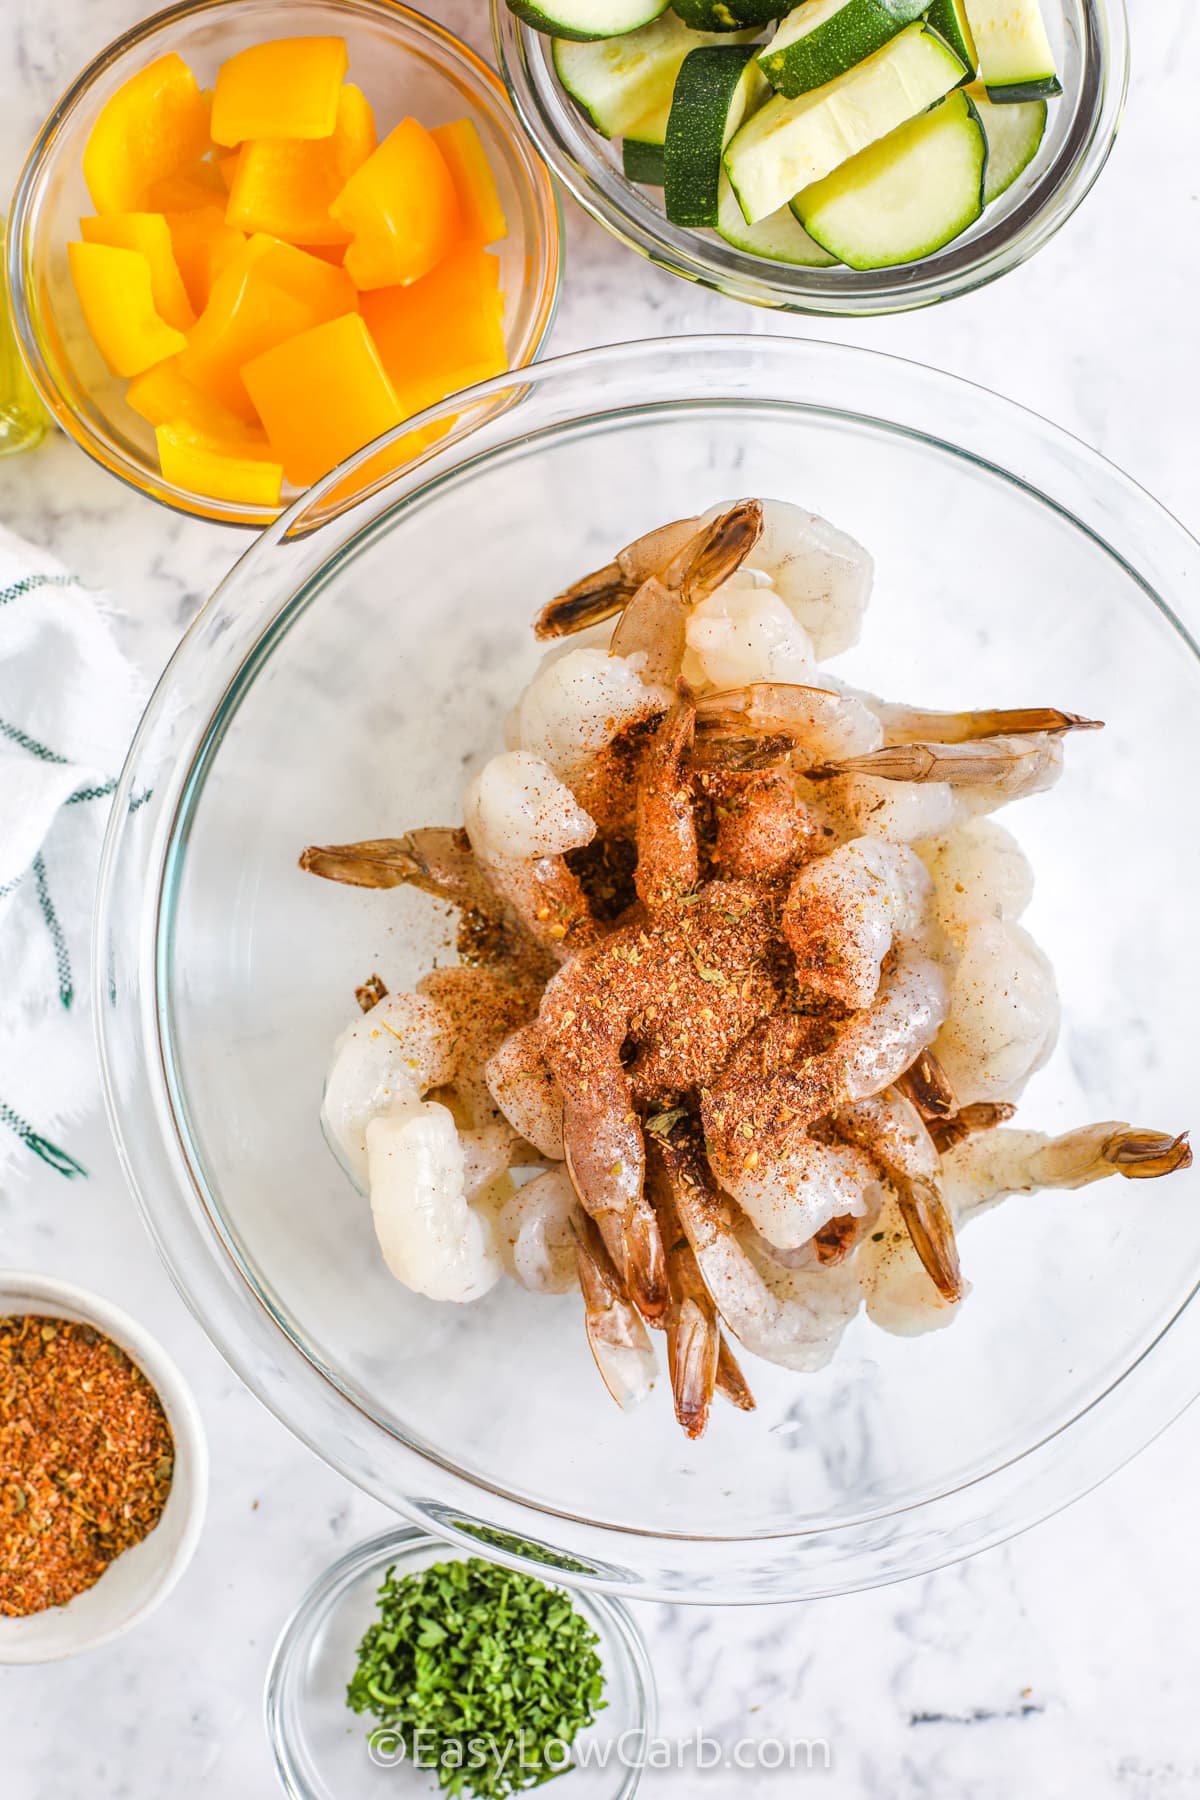 seasoned shrimp and veggies for Easy Shrimp Vegetable Skillet